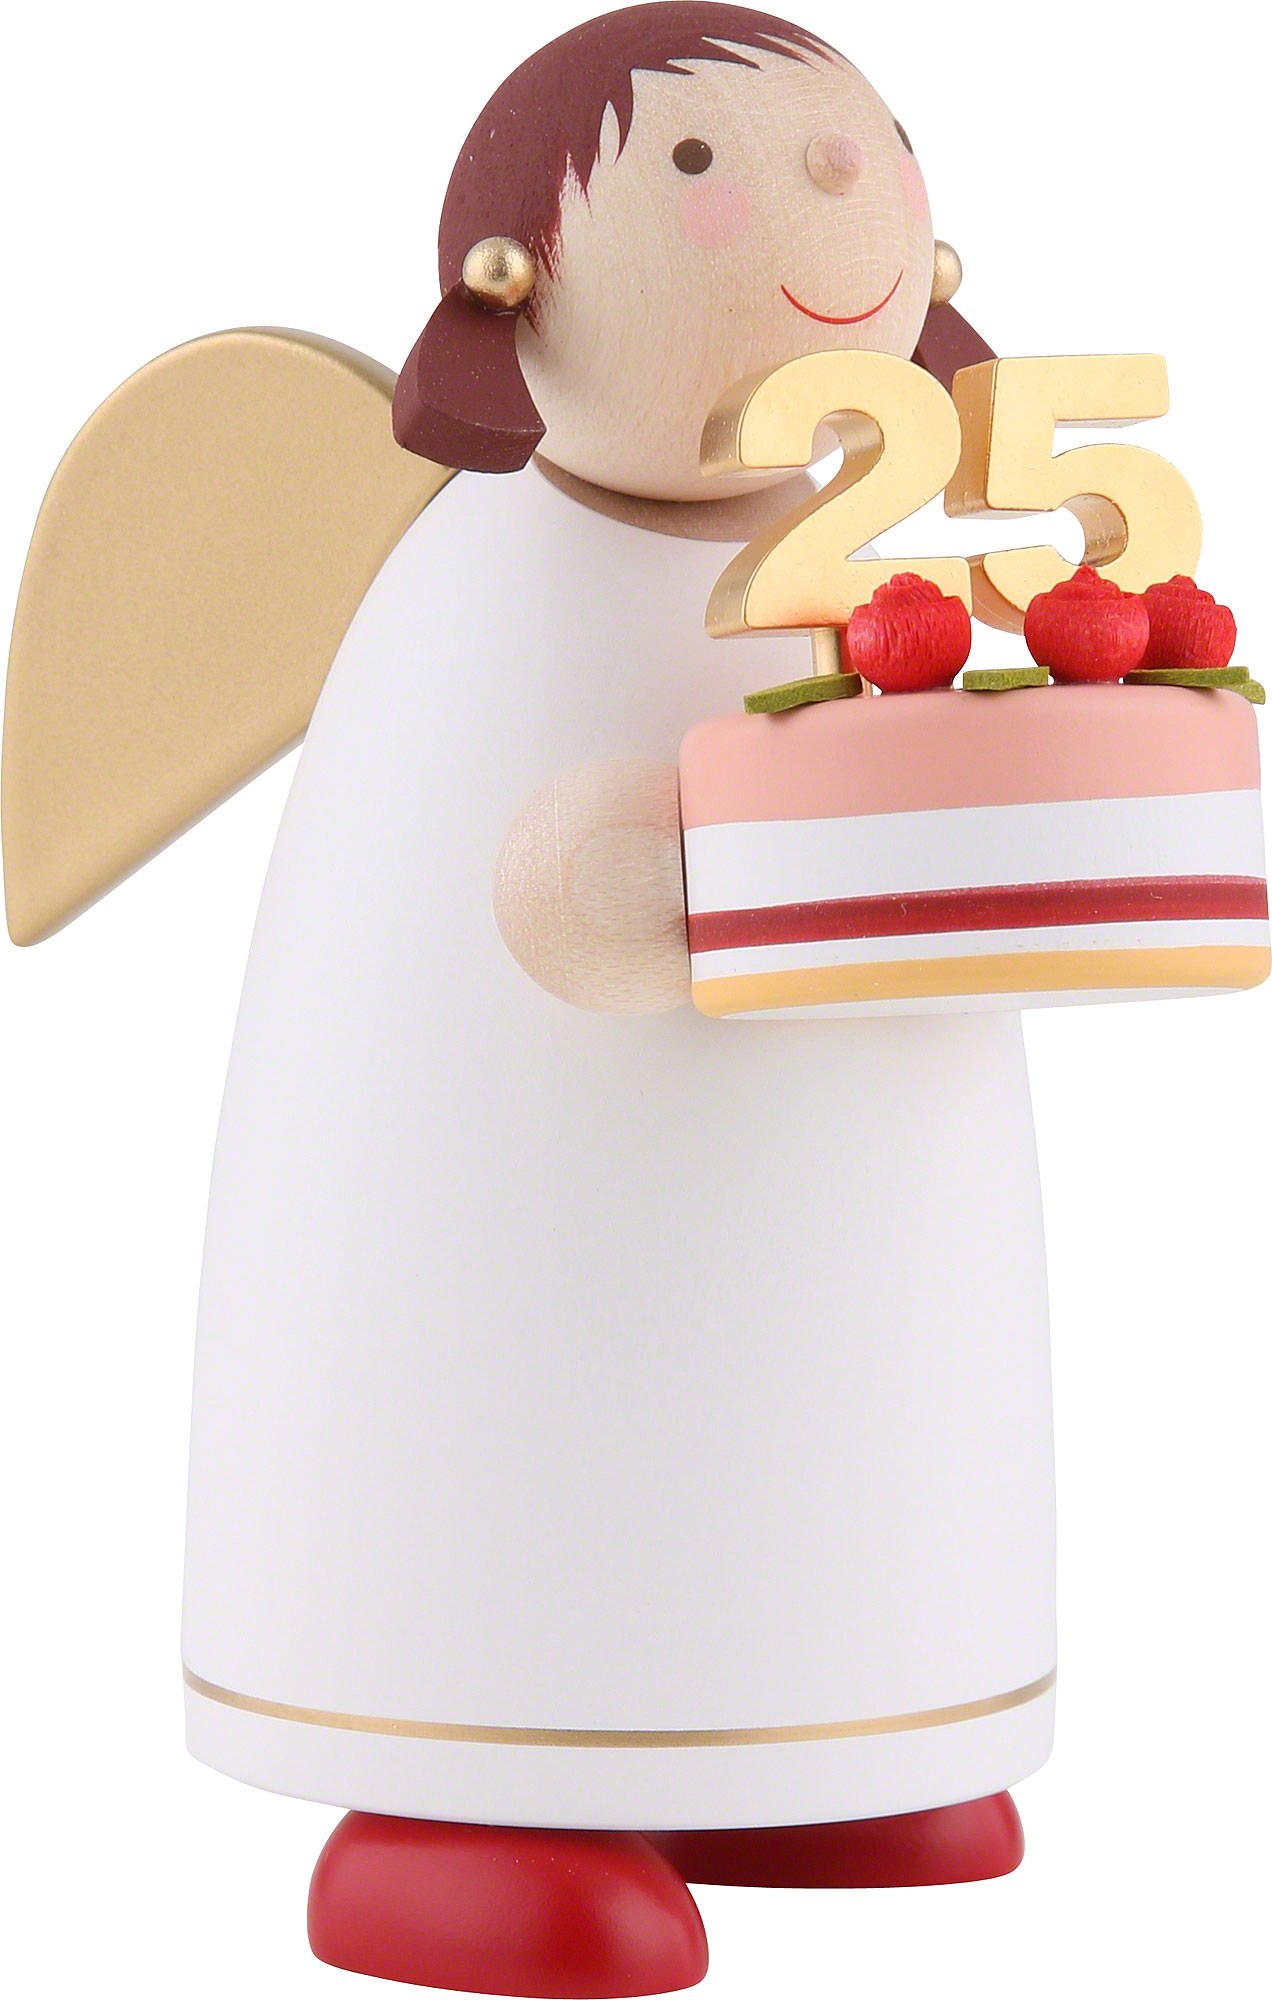 Angel Christening Cake | Gâteau de baptême Crazy Cake, Cake … | Flickr